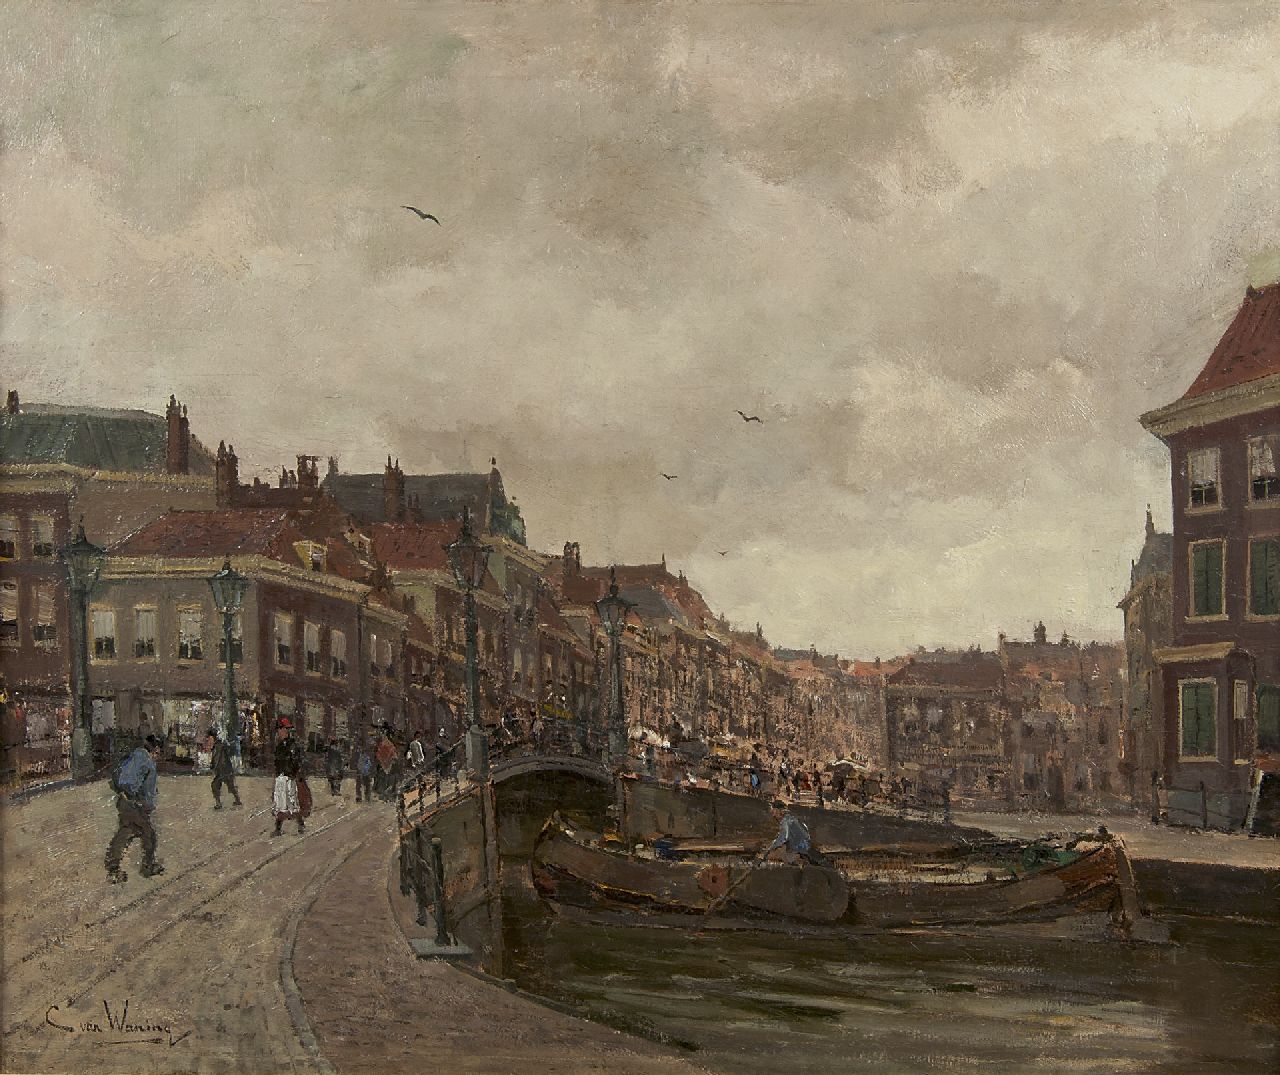 Waning C.A. van | Cornelis Anthonij 'Kees' van Waning | Gemälde zum Verkauf angeboten | Ansicht auf die 'Wagenbrug' und 'Wagenstraat', Haag, Öl auf Leinwand 51,2 x 61,3 cm, Unterzeichnet l.u.